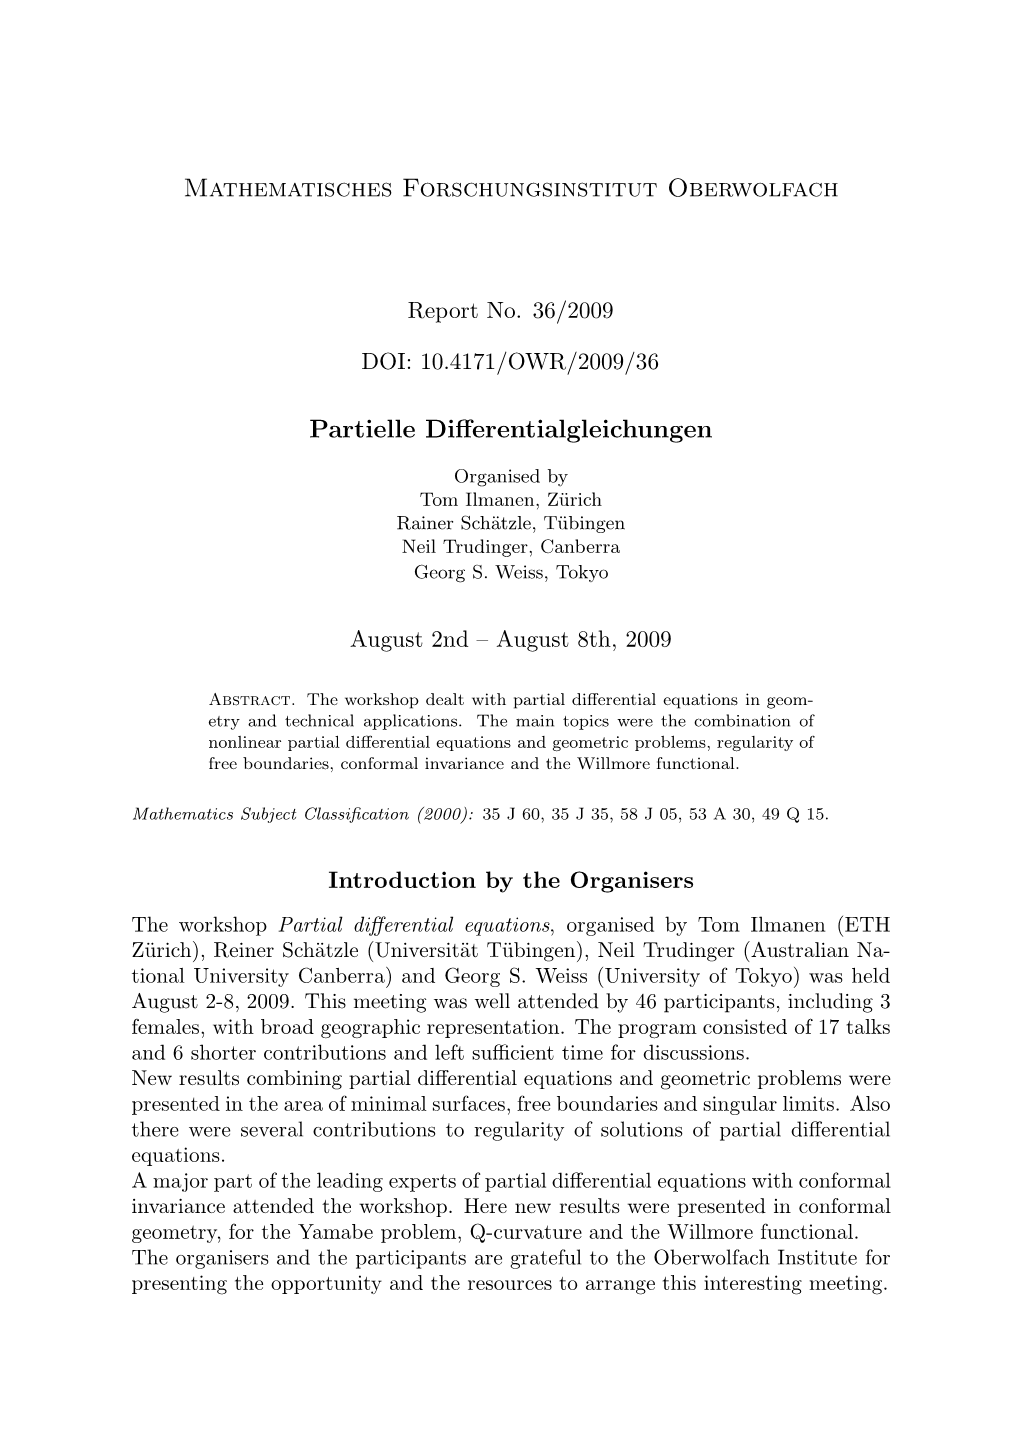 Mathematisches Forschungsinstitut Oberwolfach Partielle